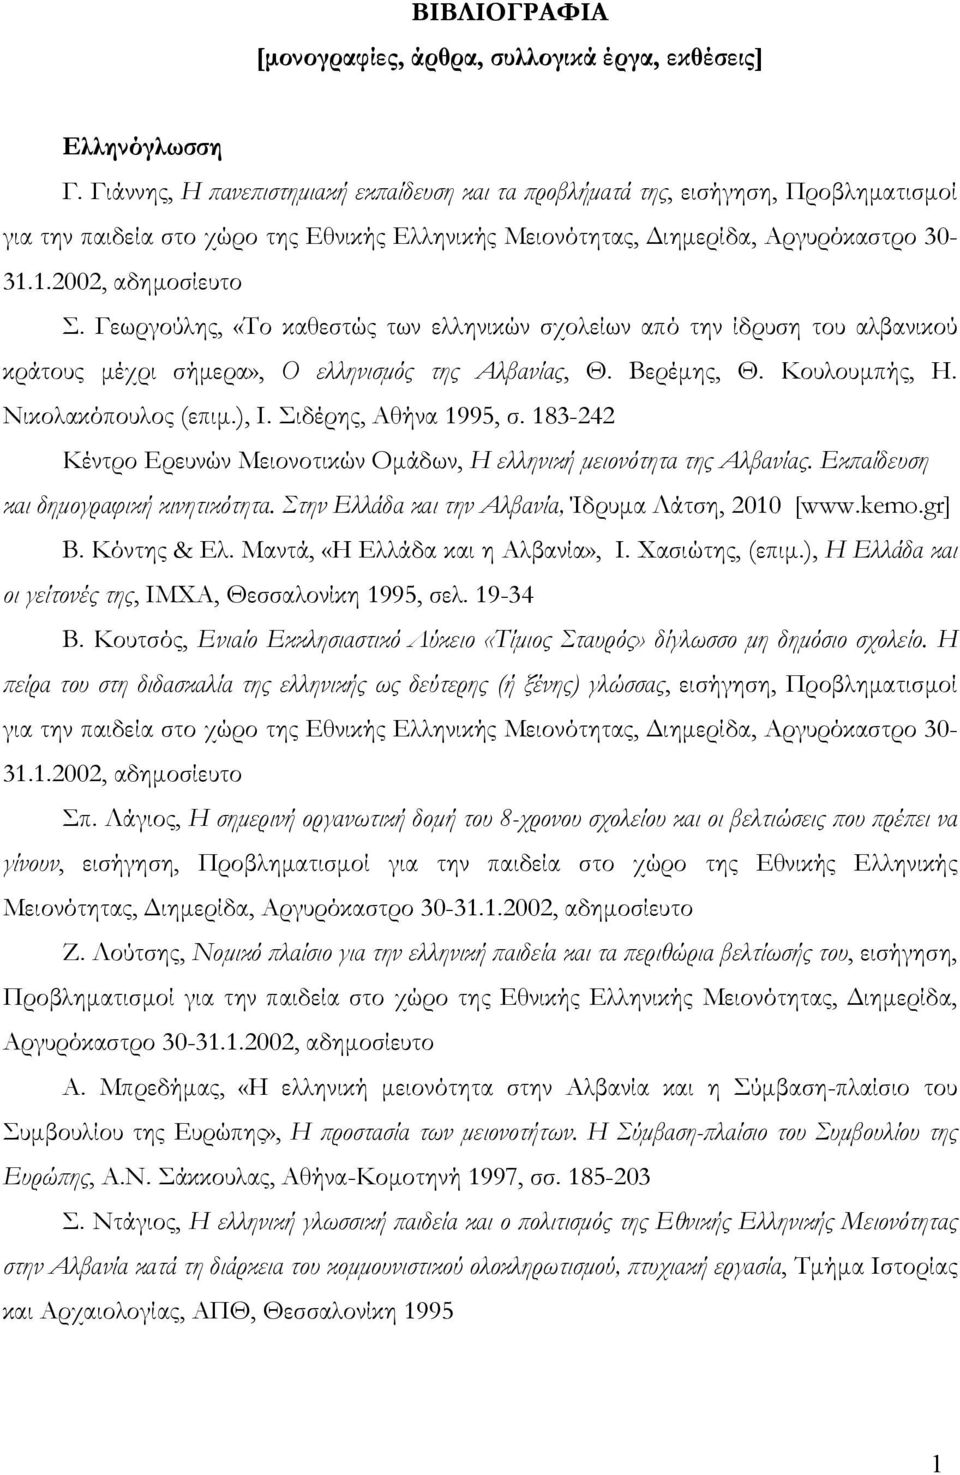 Γεωργούλης, «Το καθεστώς των ελληνικών σχολείων από την ίδρυση του αλβανικού κράτους μέχρι σήμερα», Ο ελληνισμός της Αλβανίας, Θ. Βερέμης, Θ. Κουλουμπής, Η. Νικολακόπουλος (επιμ.), Ι.